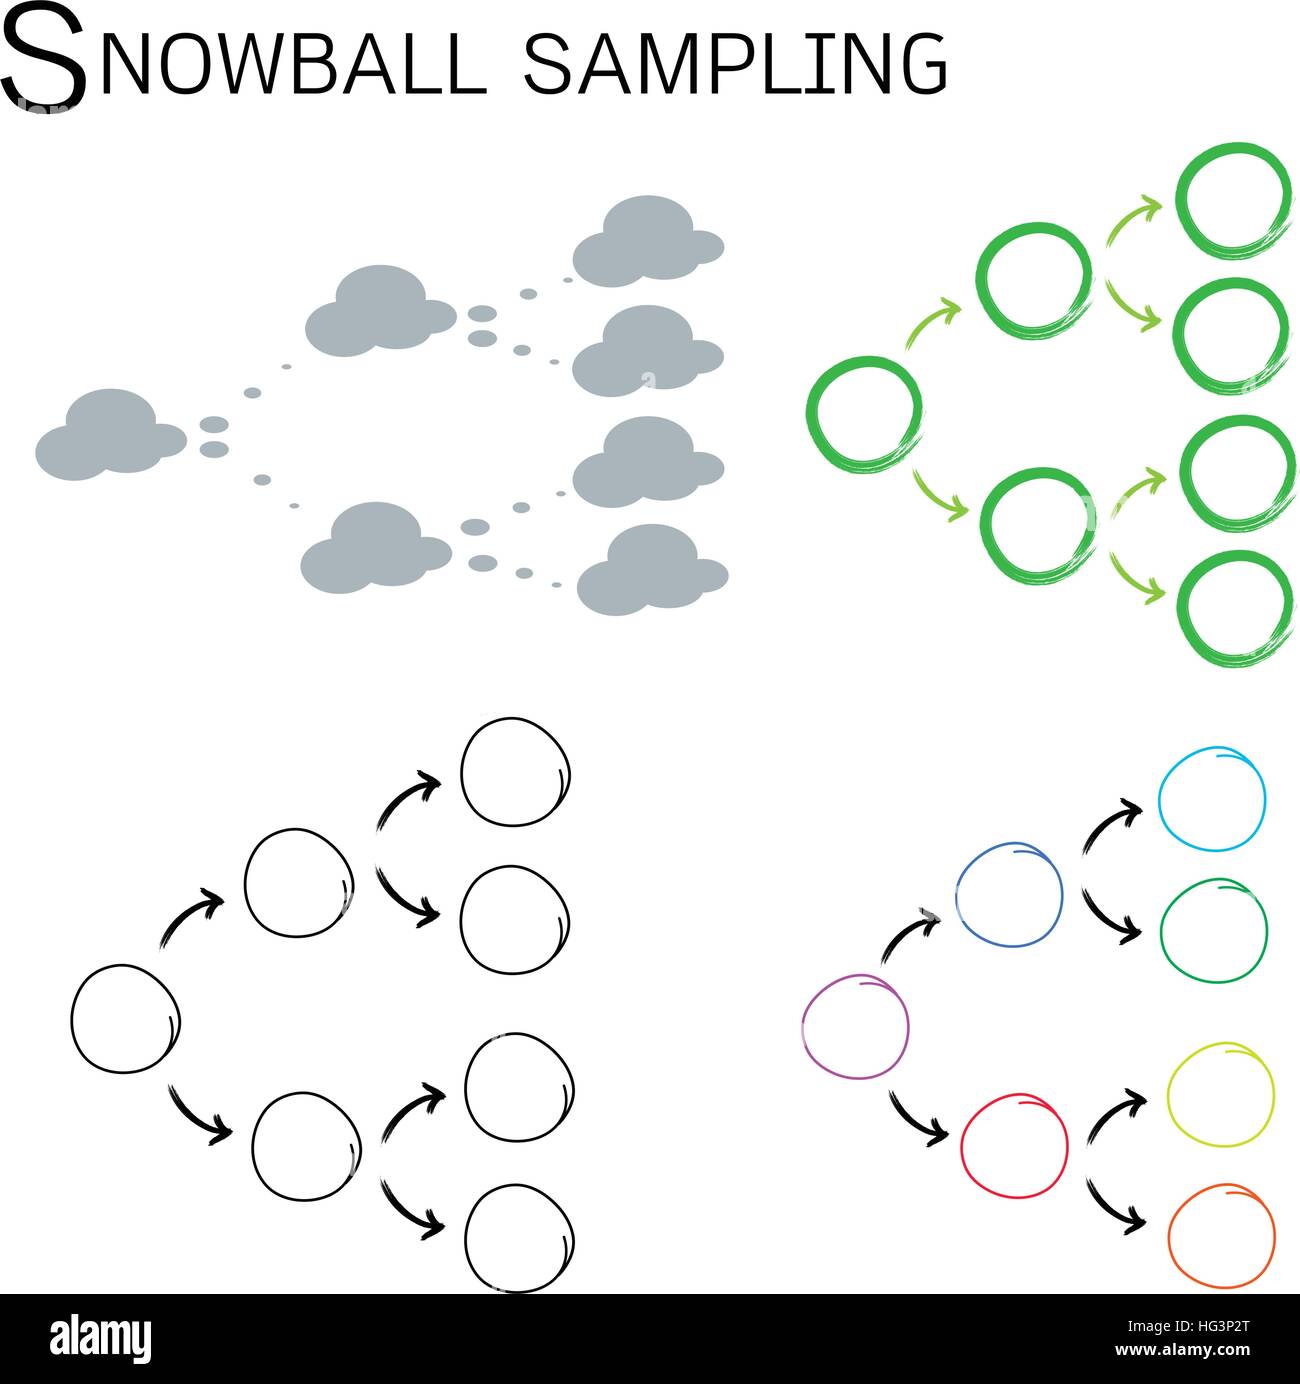 Quattro set di campionamenti Snowball, il Non-Probability tecnica di campionamento nella ricerca qualitativa. Illustrazione Vettoriale